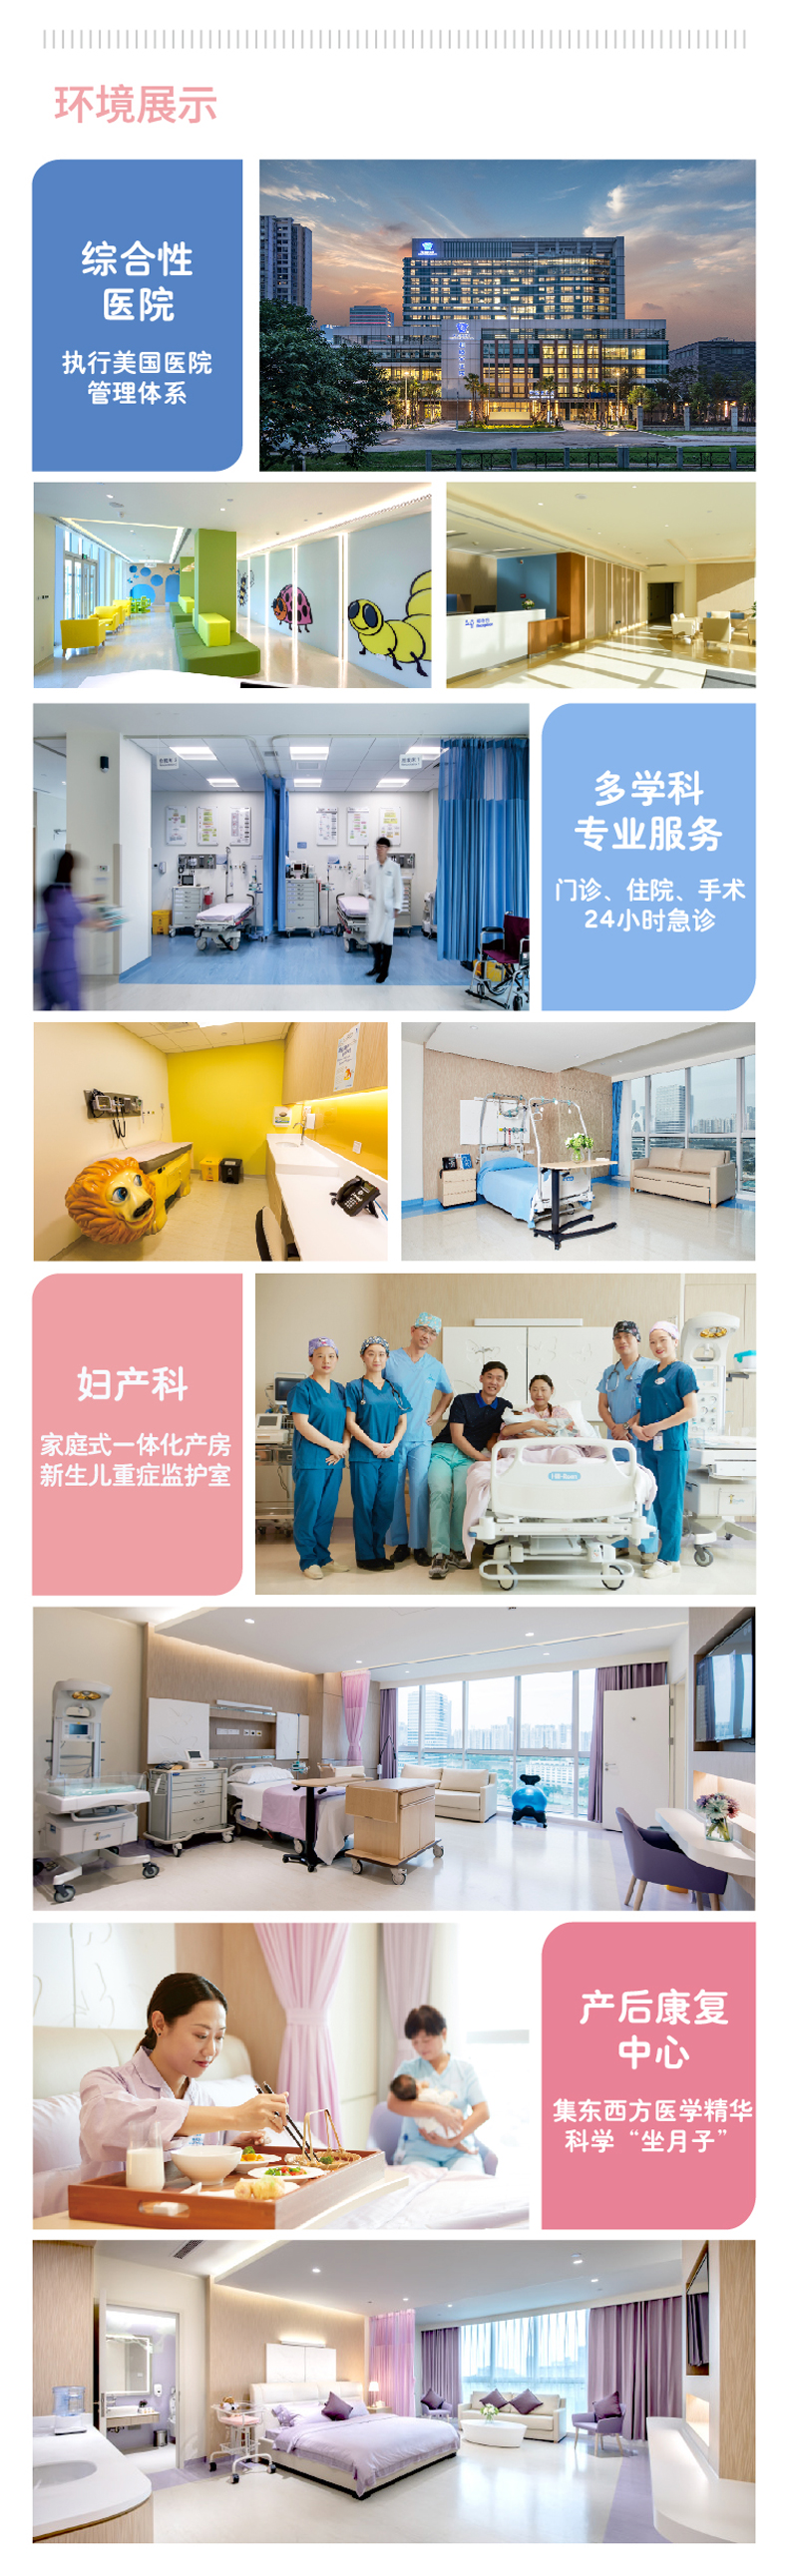 广州和睦家医院女性压力性尿失禁功能评估诊疗黄耀斌医生专属门诊